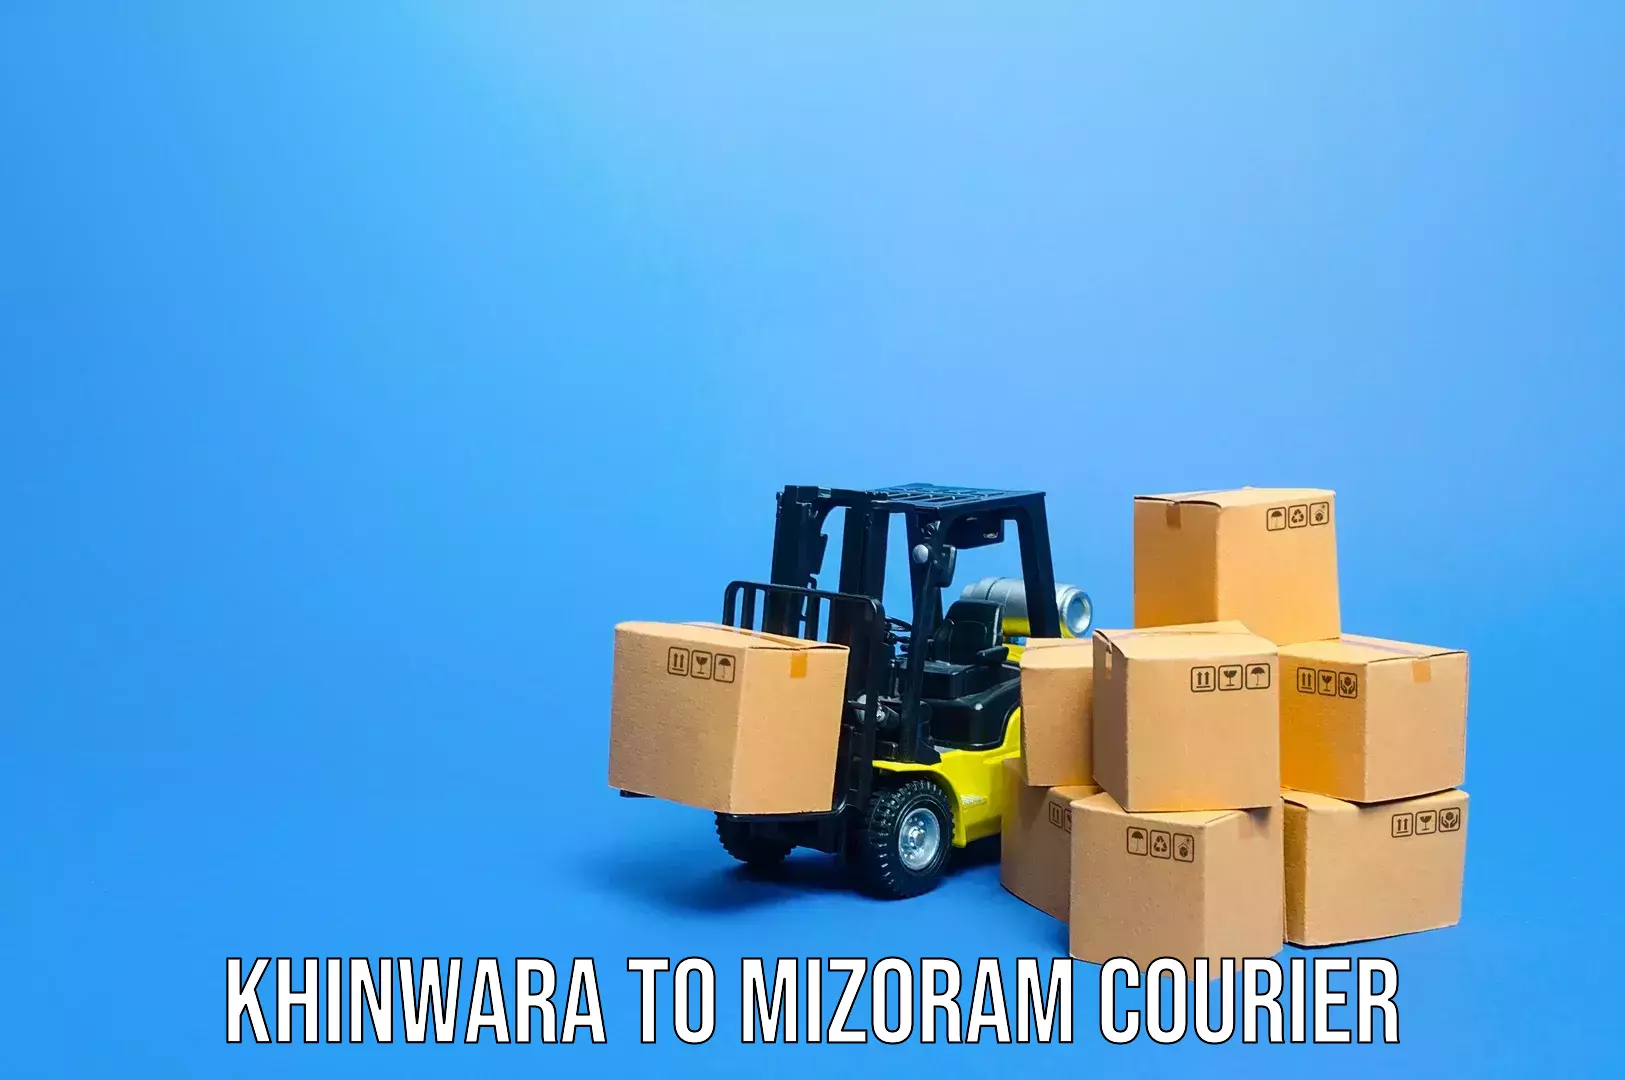 Baggage transport innovation Khinwara to Mizoram